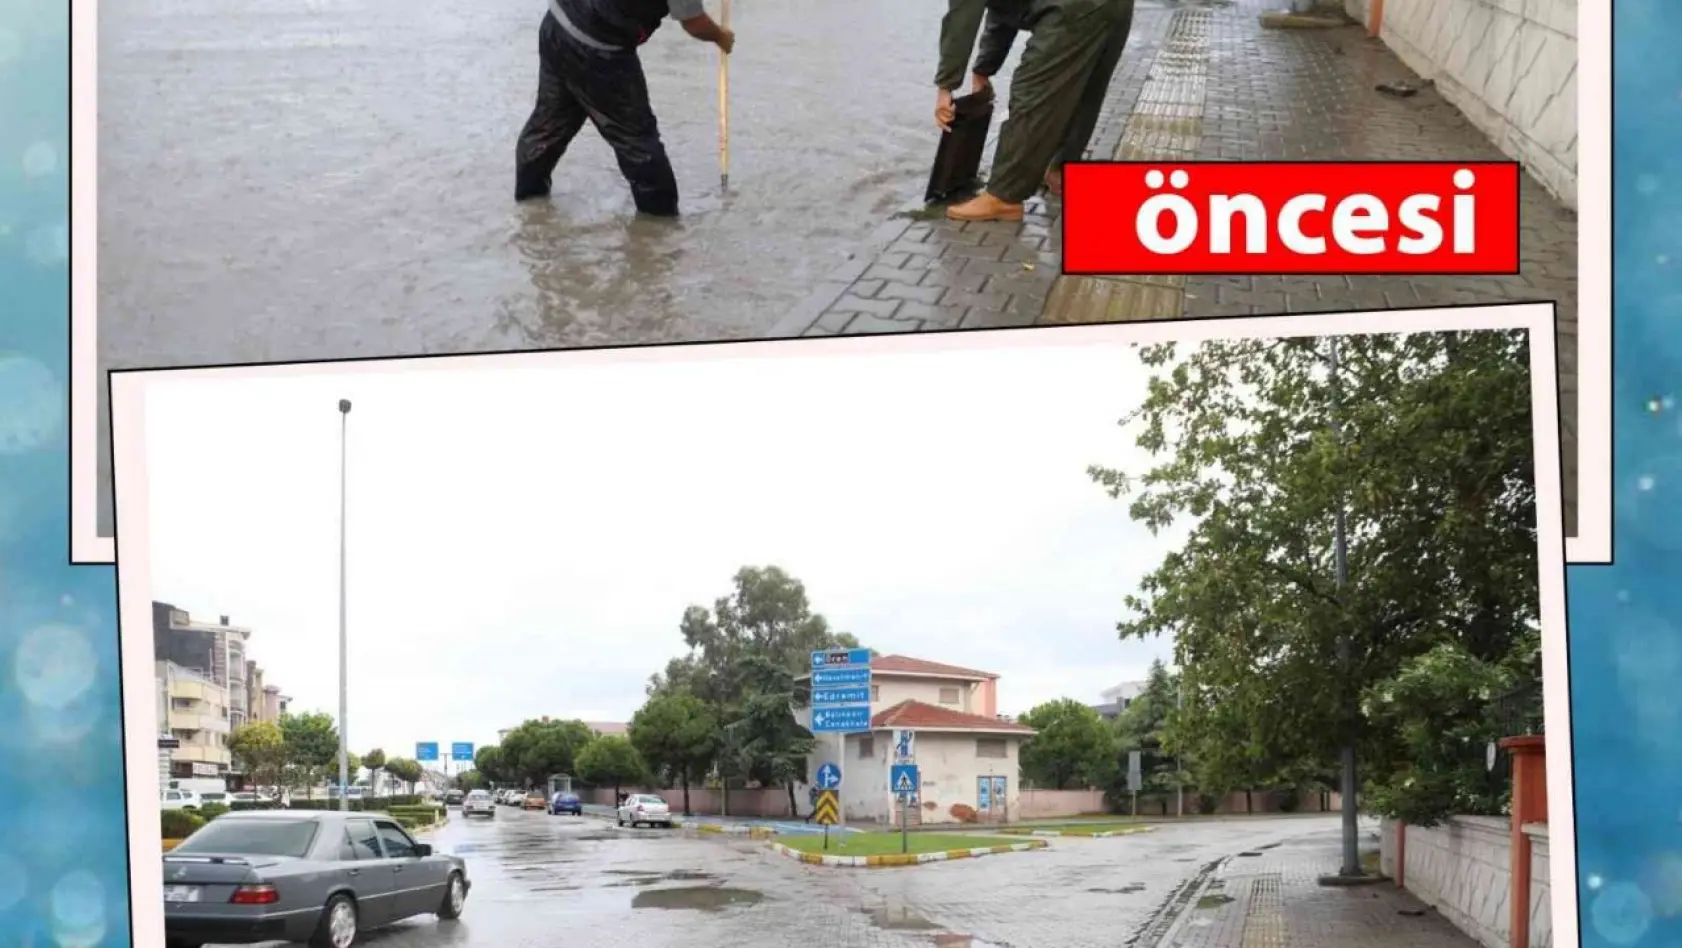 Su baskınları için yapılan çalışmalar fotoğraflar ile kayıt altına alınarak öncesi ve sonrası kamuoyu ile paylaşıldı